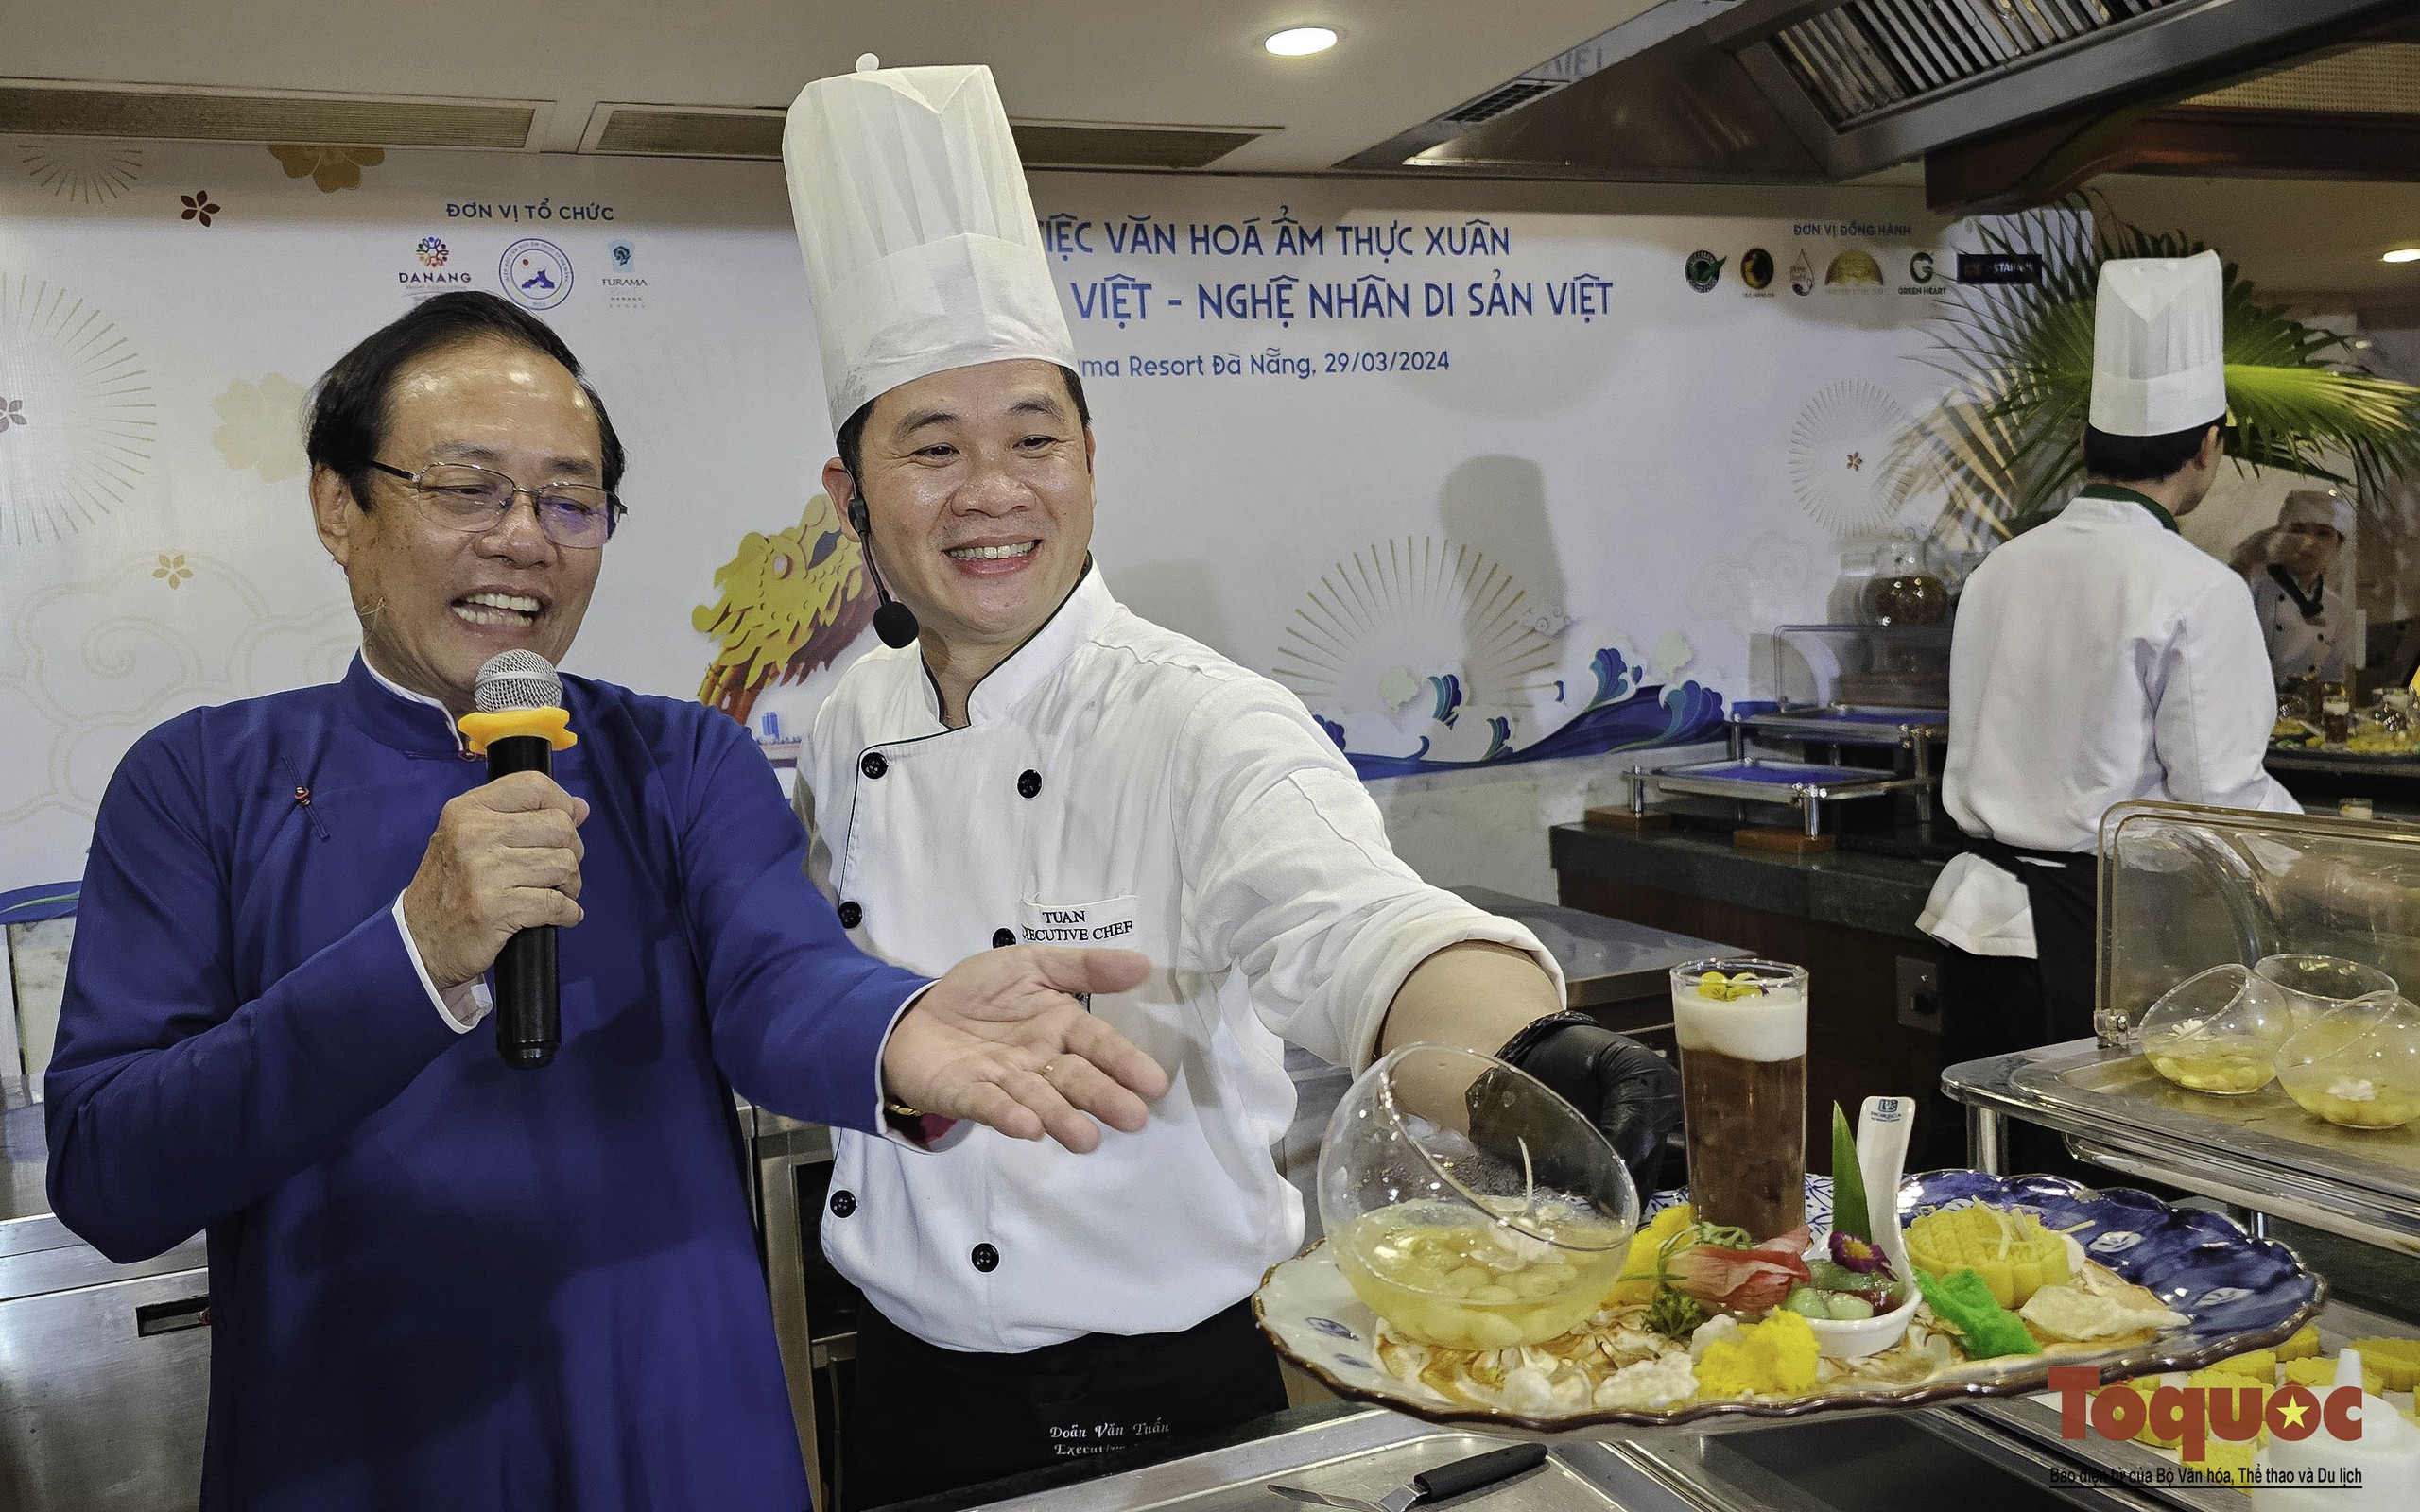 Xem các nghệ nhân ẩm thực hàng đầu Việt Nam quảng diễn những tinh hoa món ngon 3 miền - Ảnh 6.